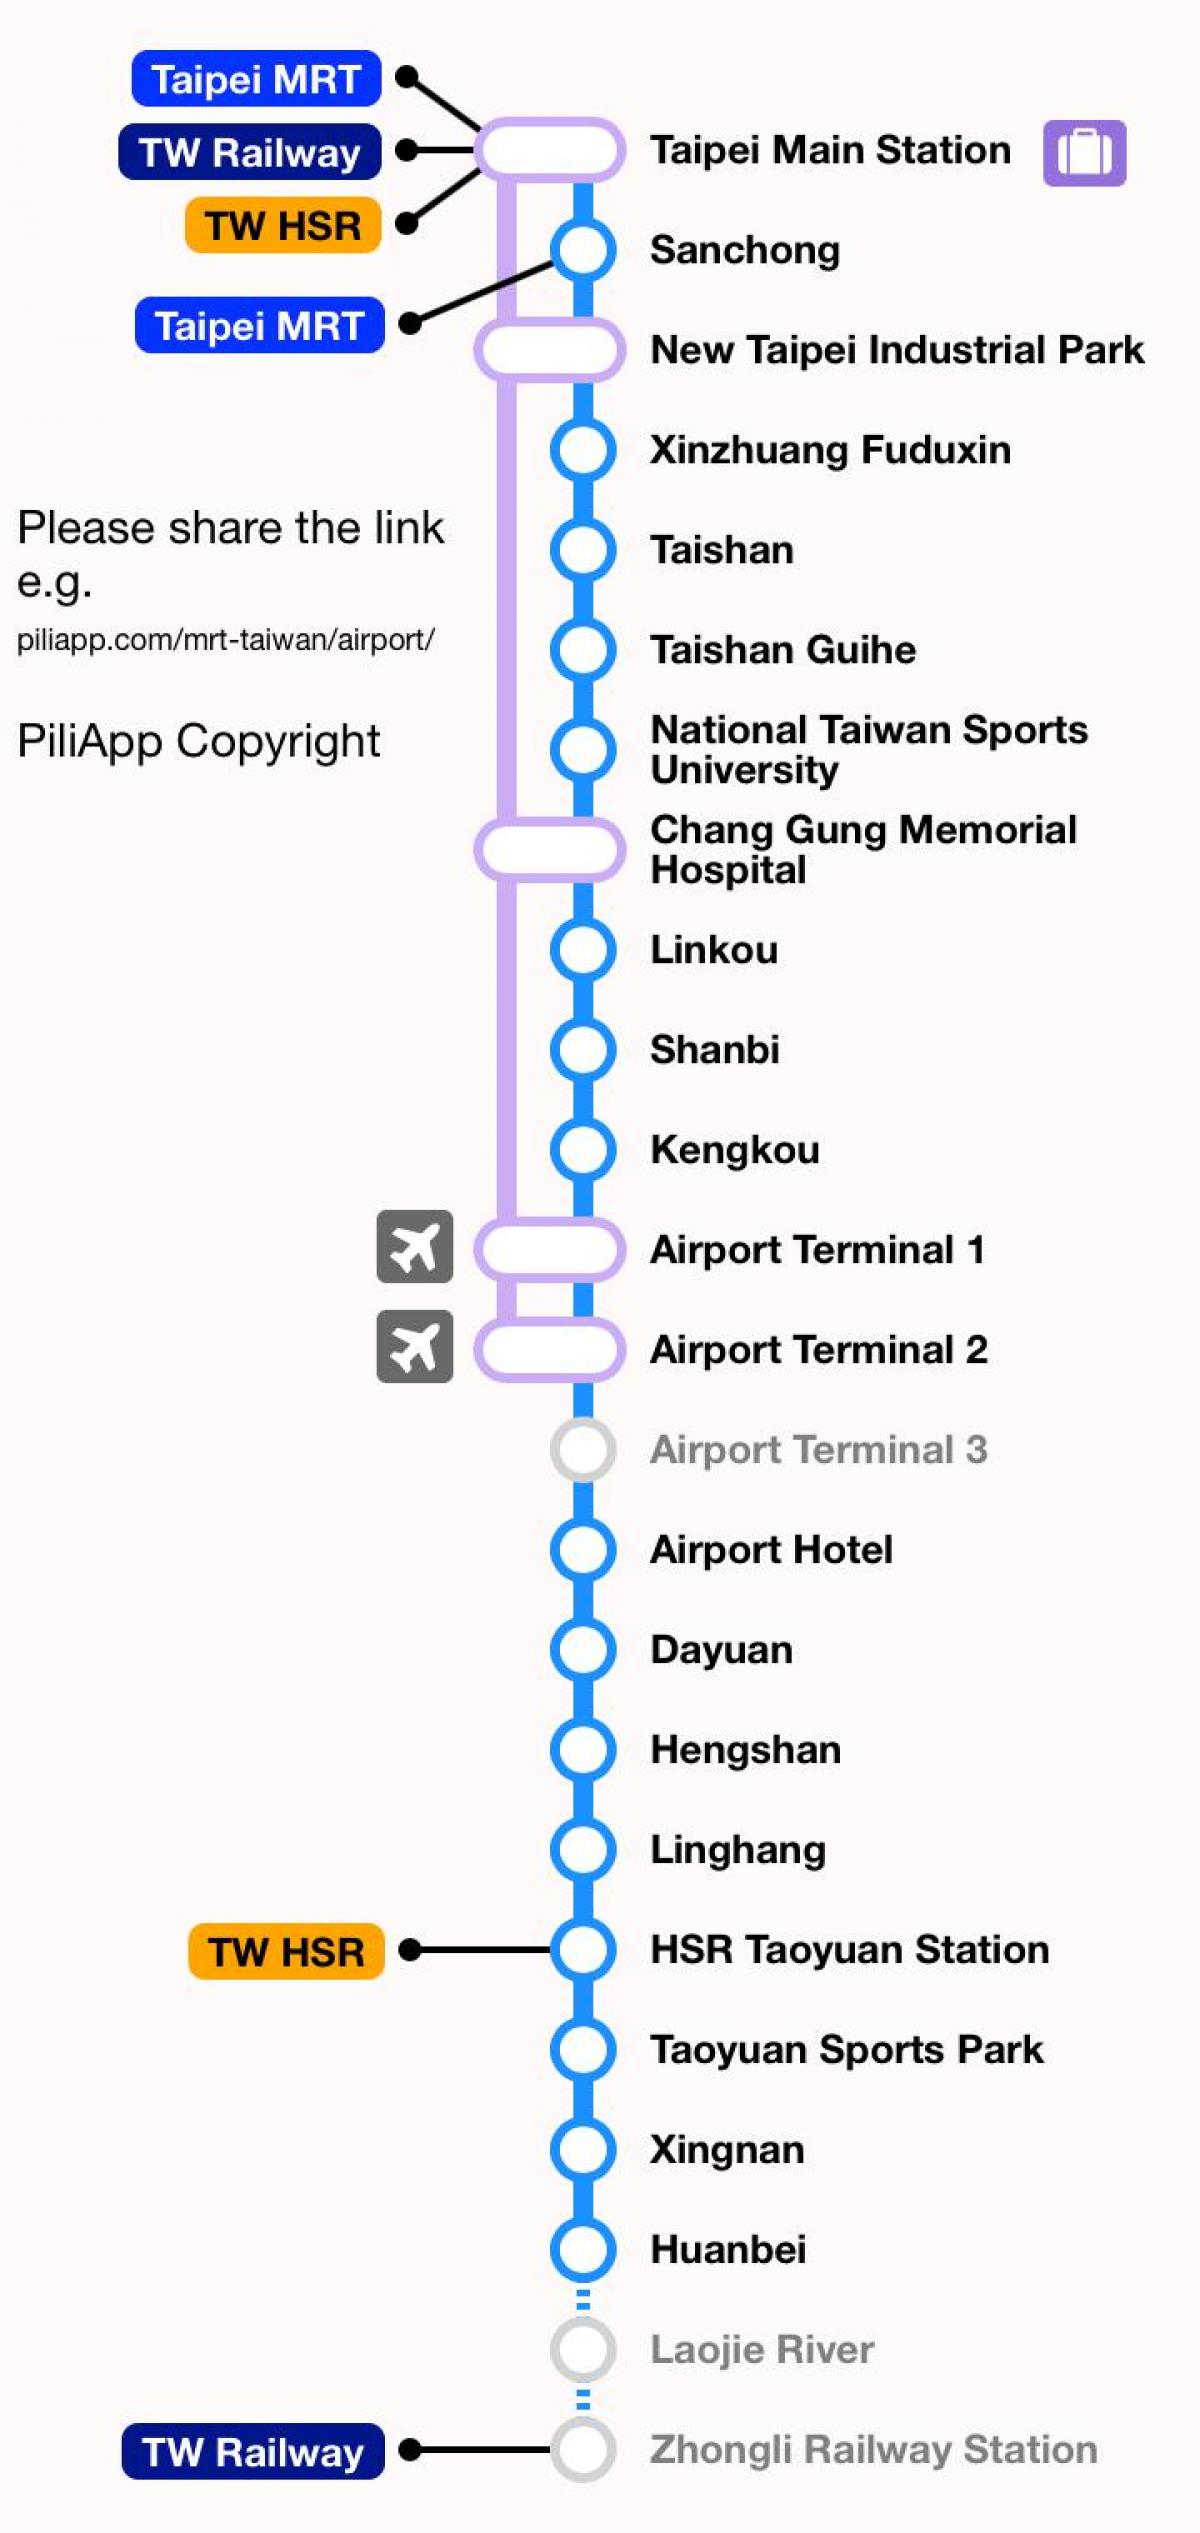 Taipei mrt kort taoyuan flygplats